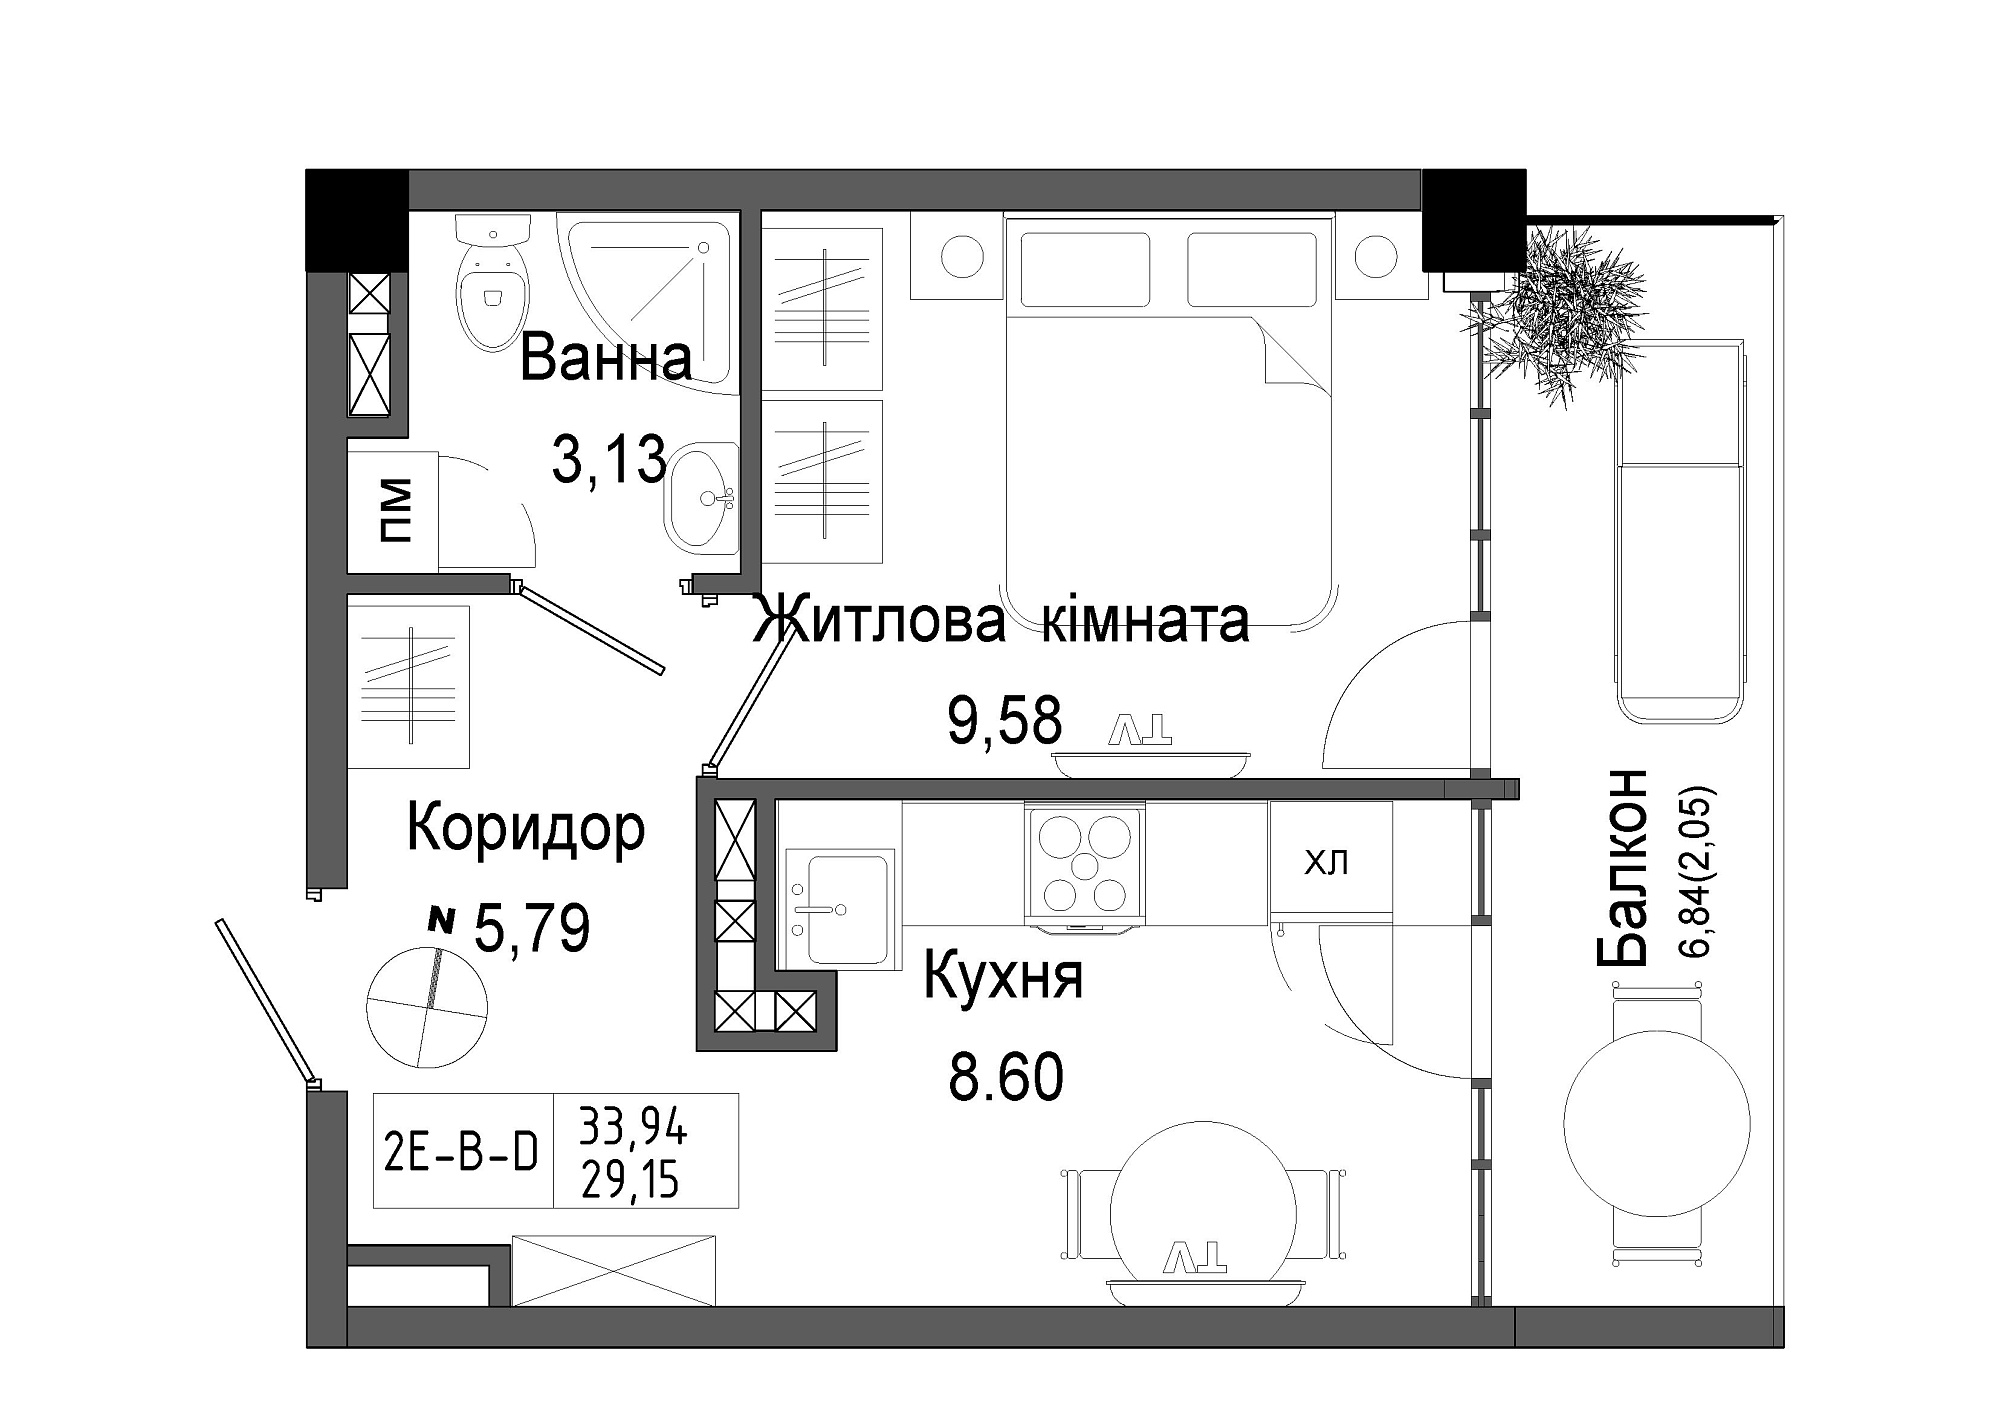 Планировка 1-к квартира площей 29.15м2, UM-006-08/0003.